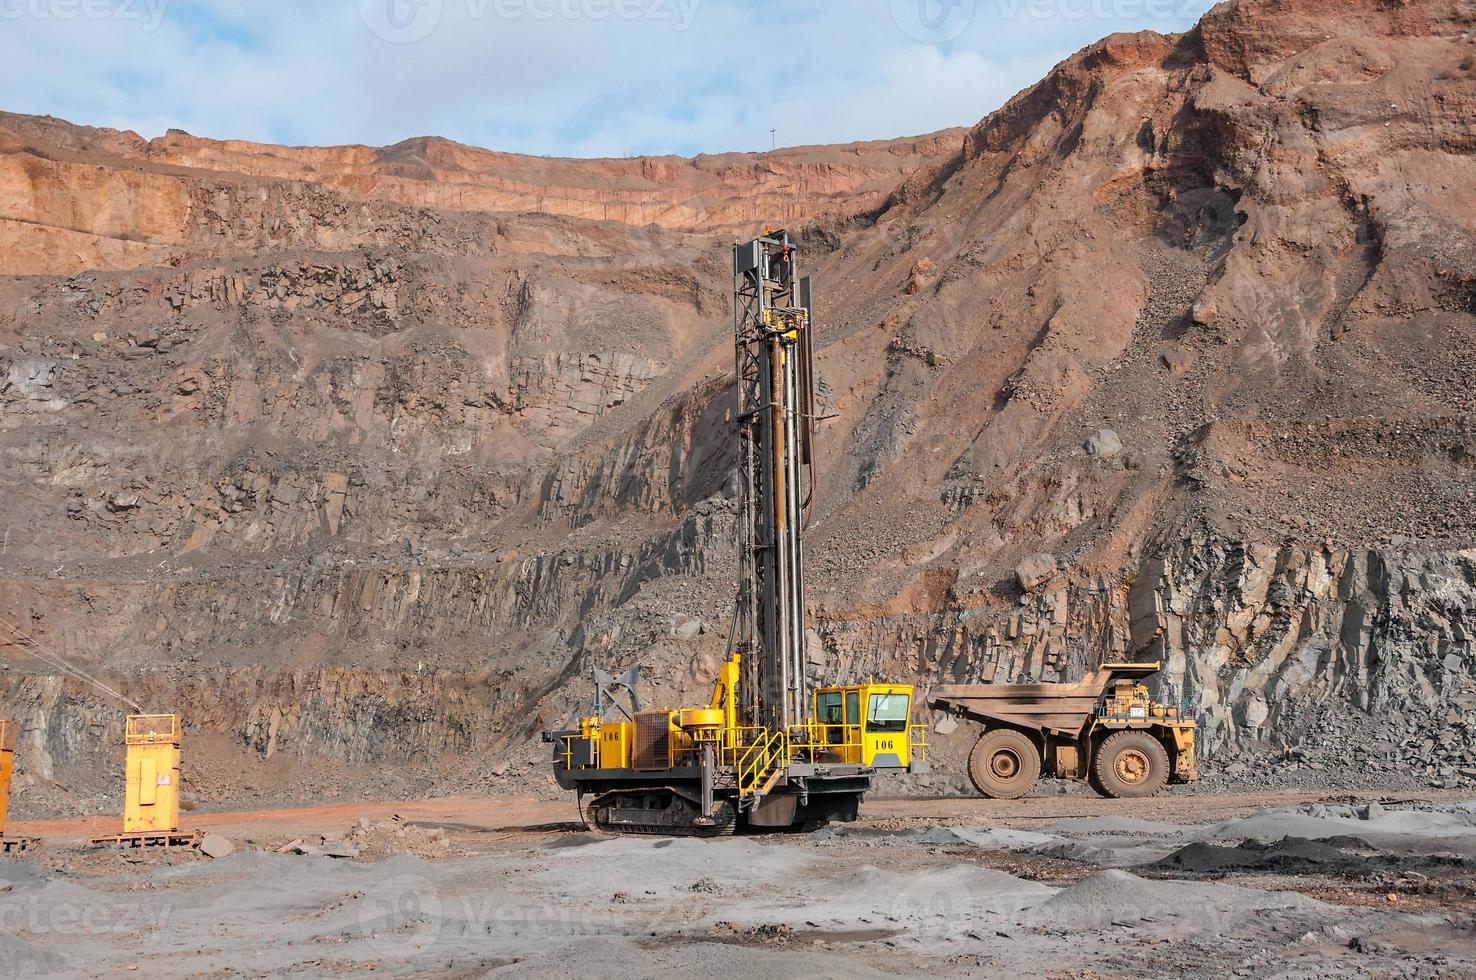 Les camions à benne basculante de la mine à ciel ouvert conduisent seuls la zone industrielle de la carrière de minerai de fer photo